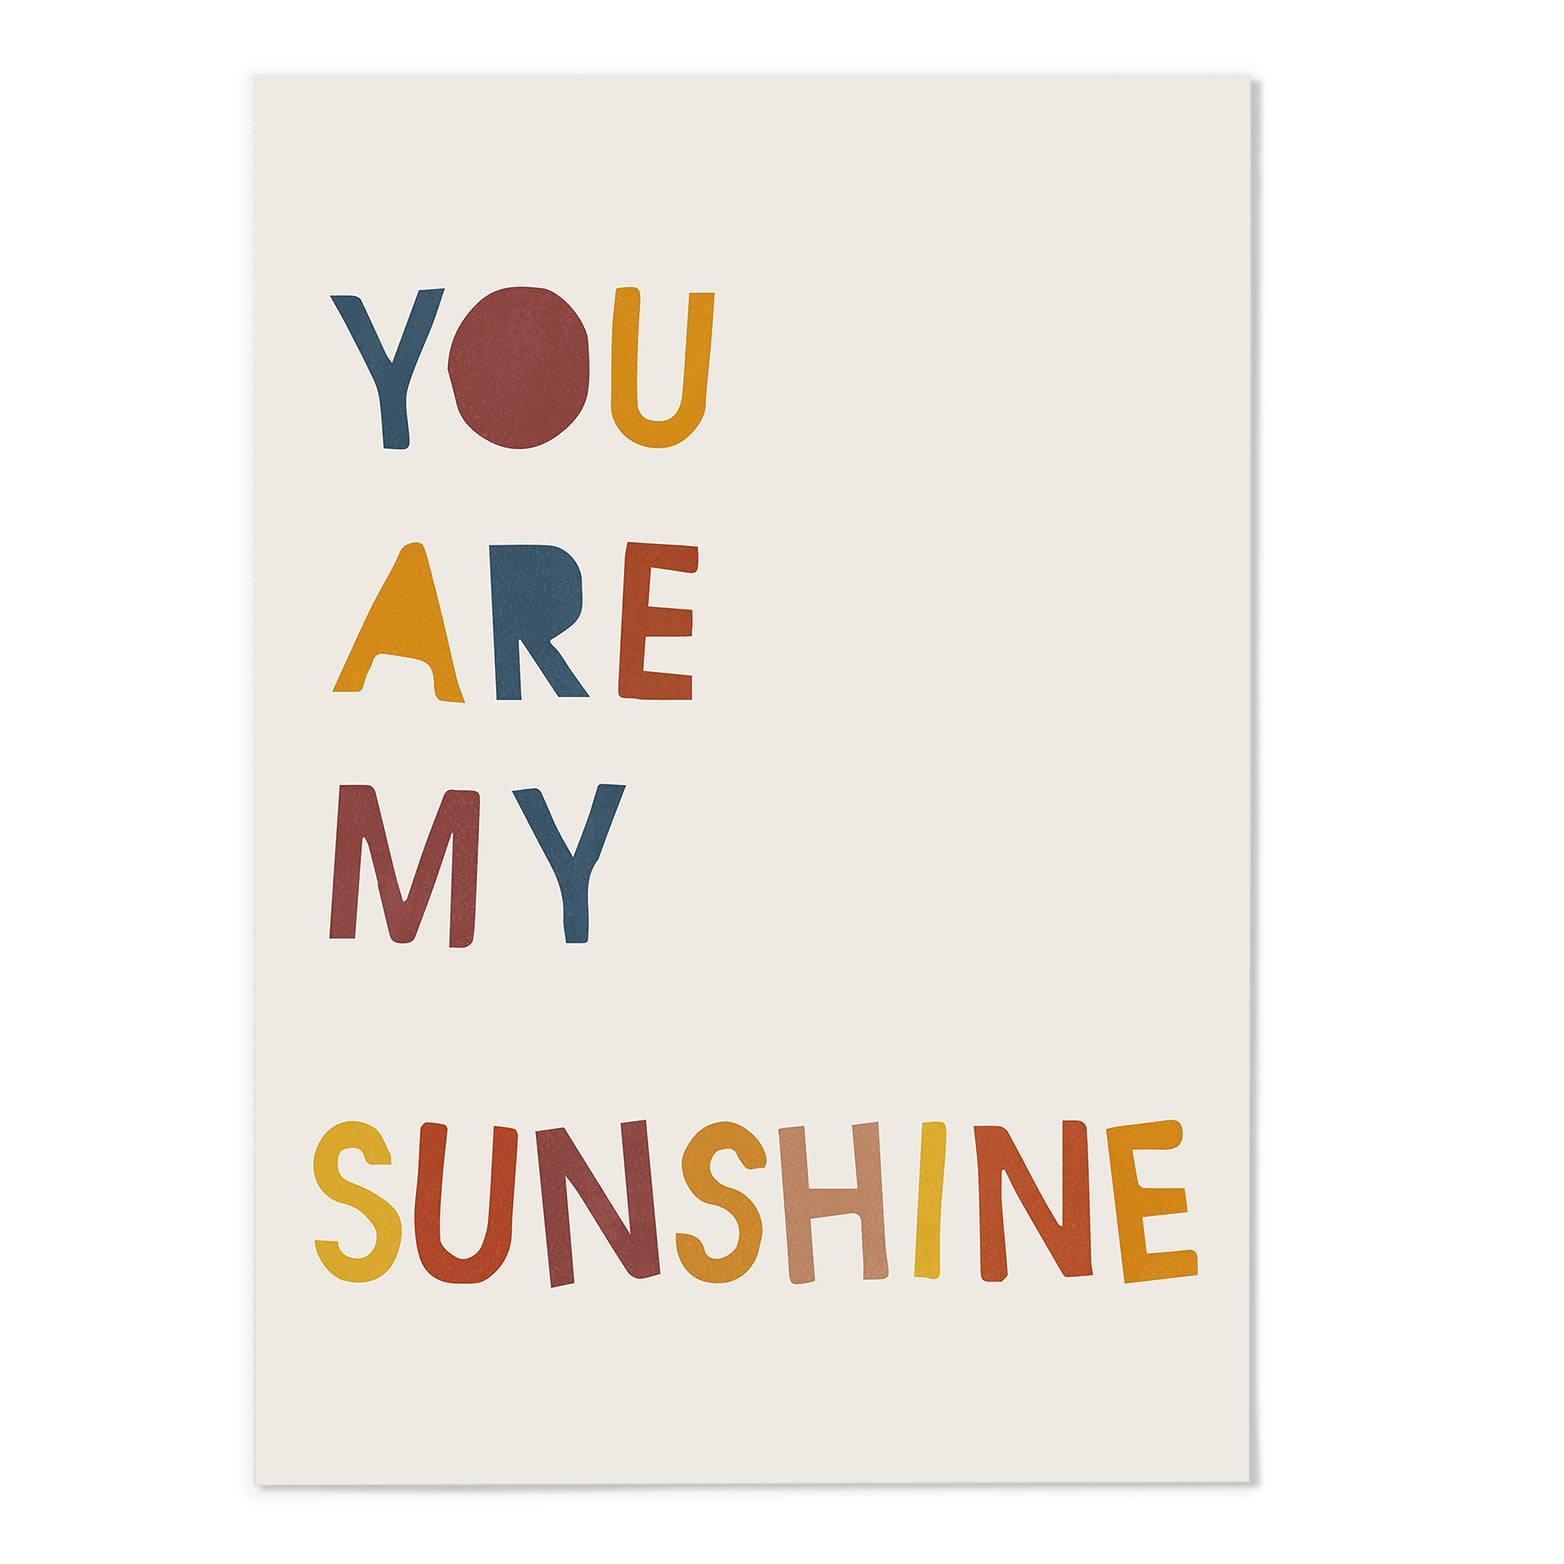 You are my sunshine Art Print - MJ Design Studio